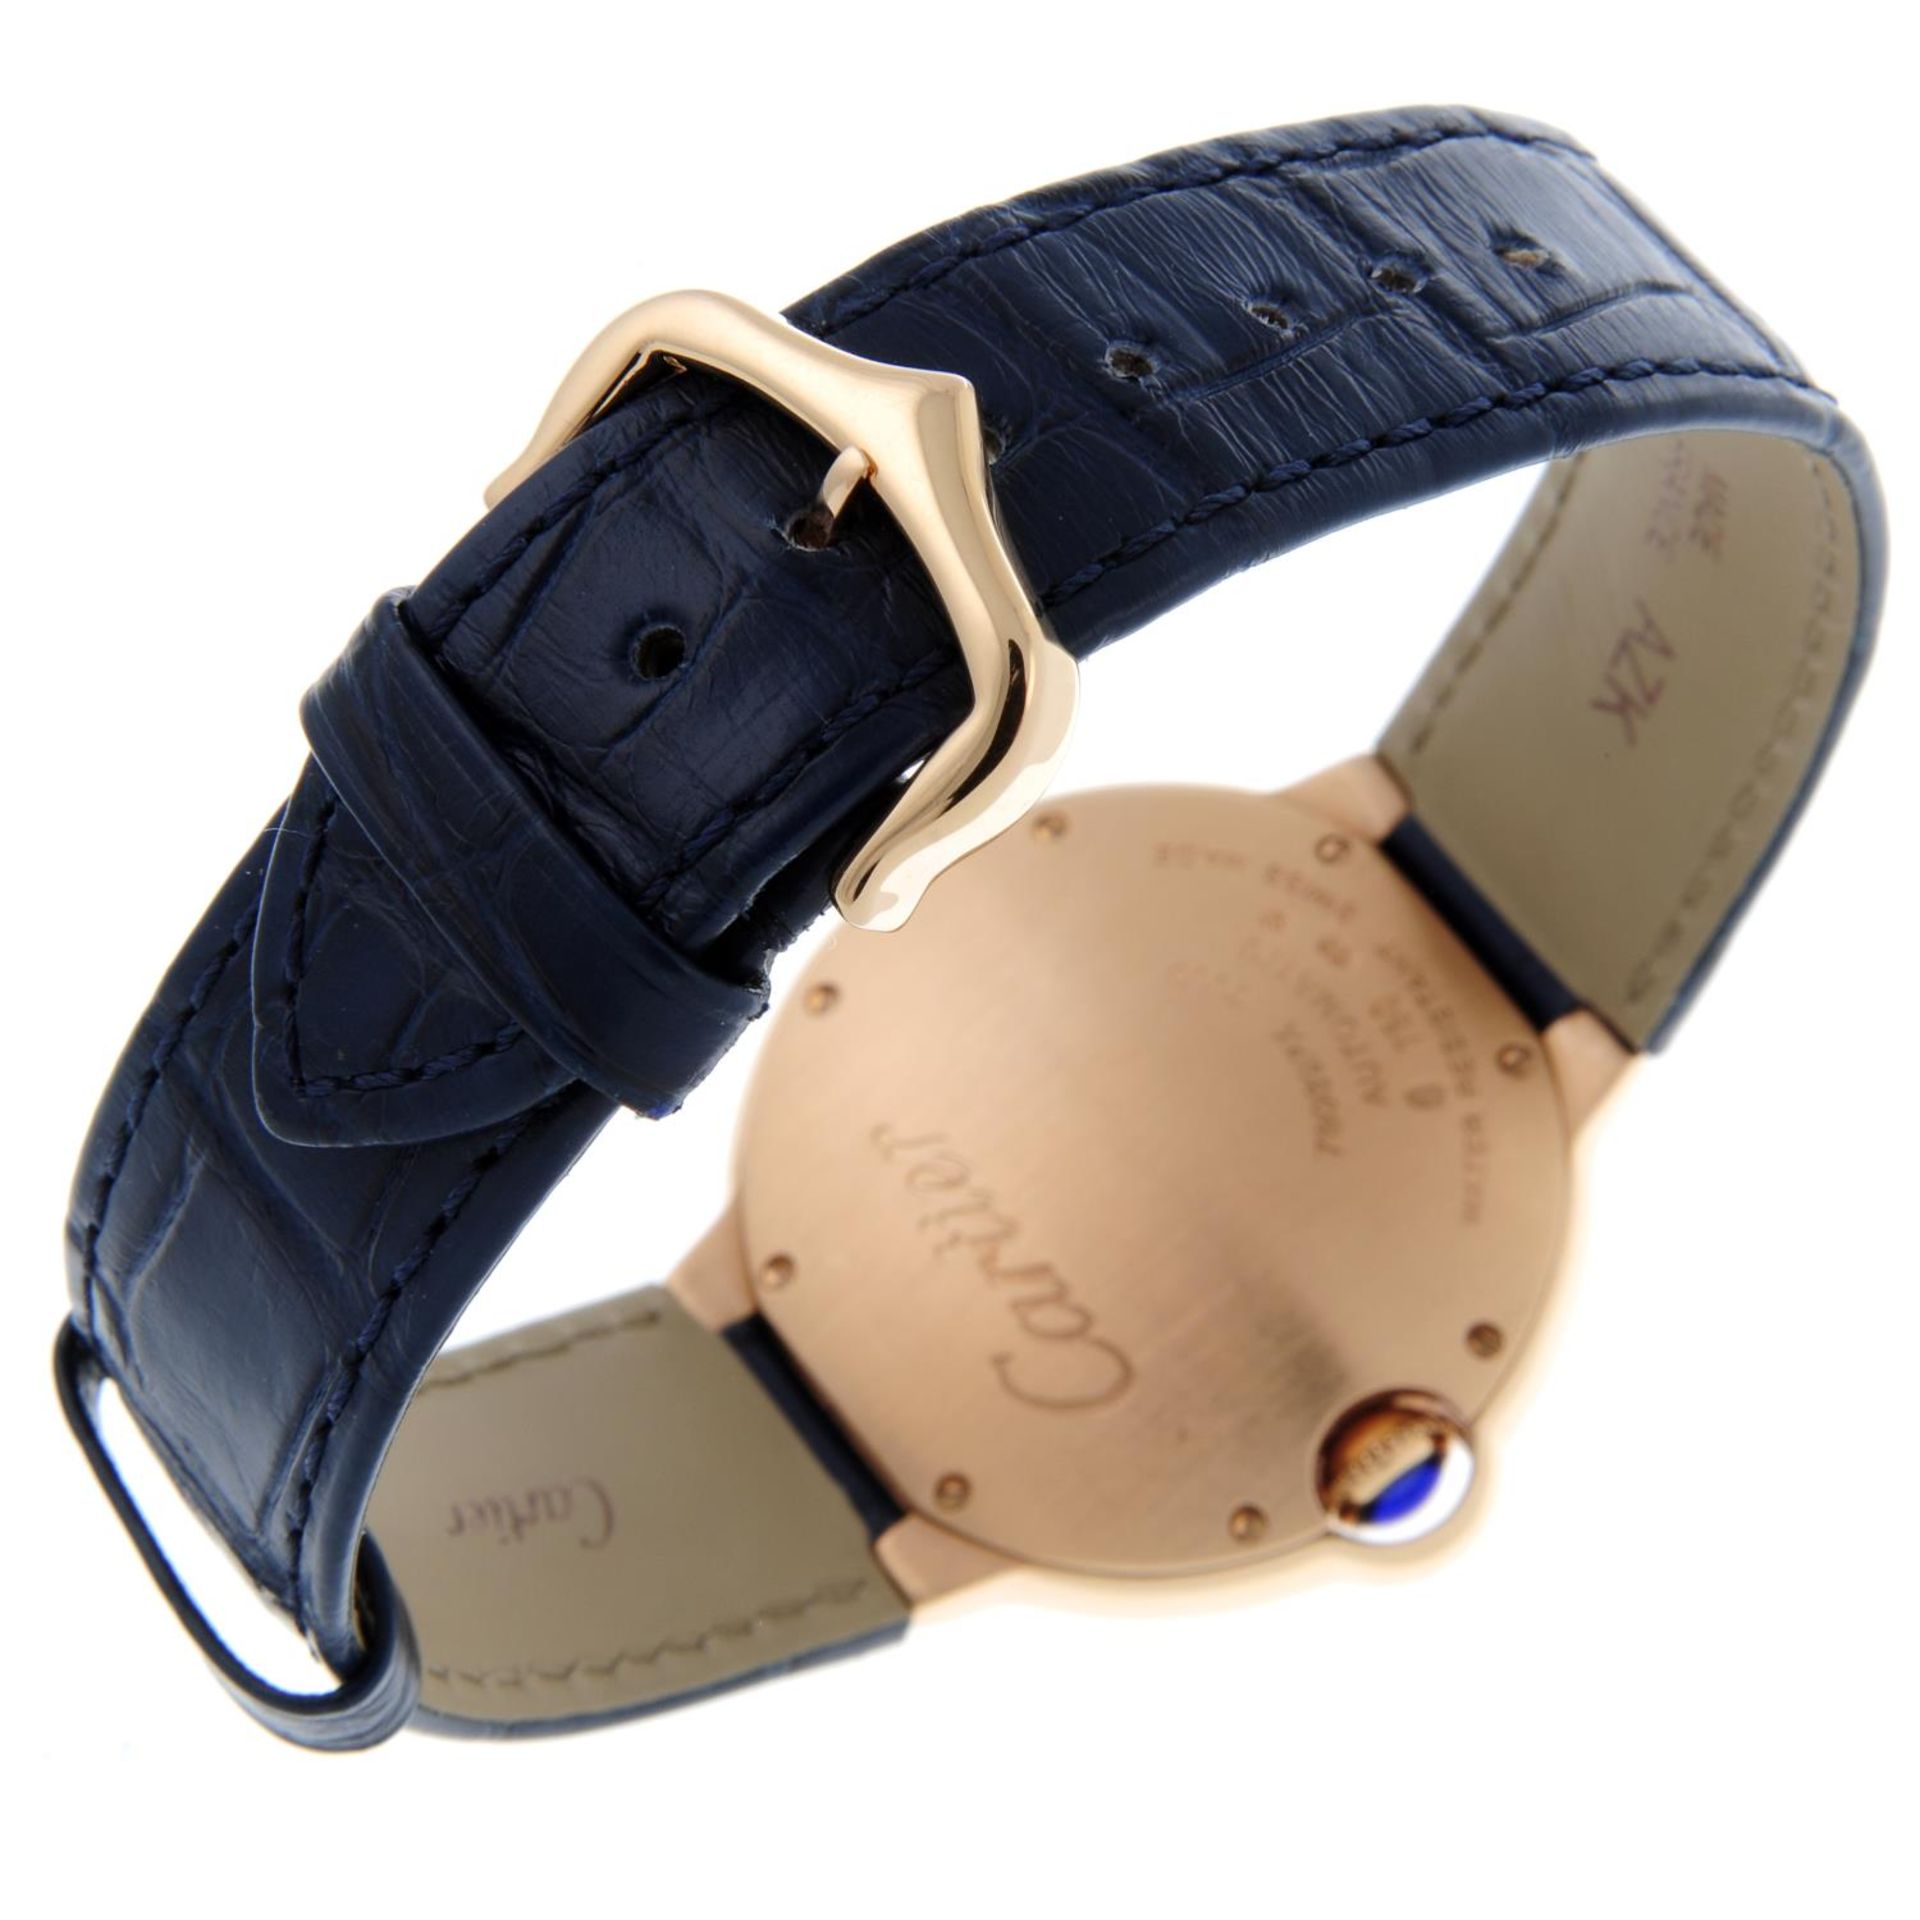 CARTIER - a Ballon Bleu wrist watch. - Image 2 of 6